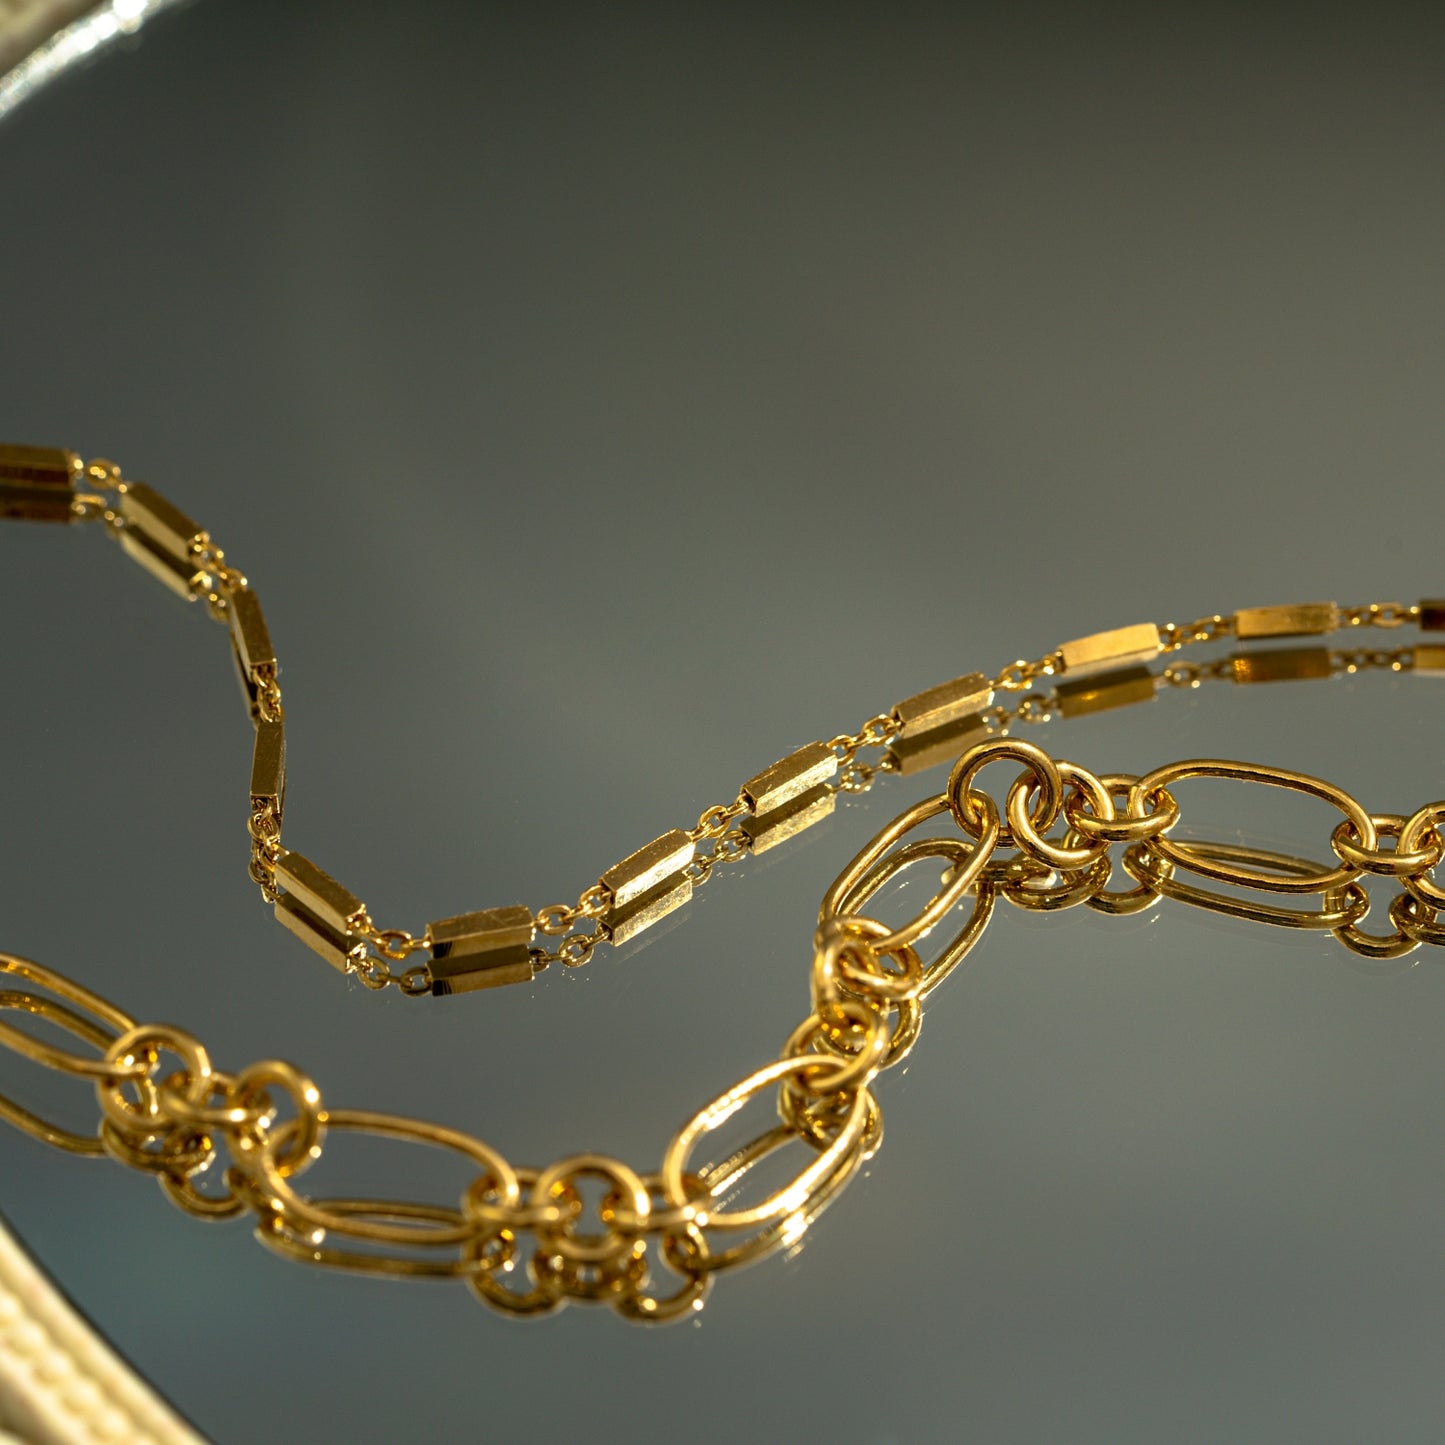 Oblong Oval Link Chain Bracelet